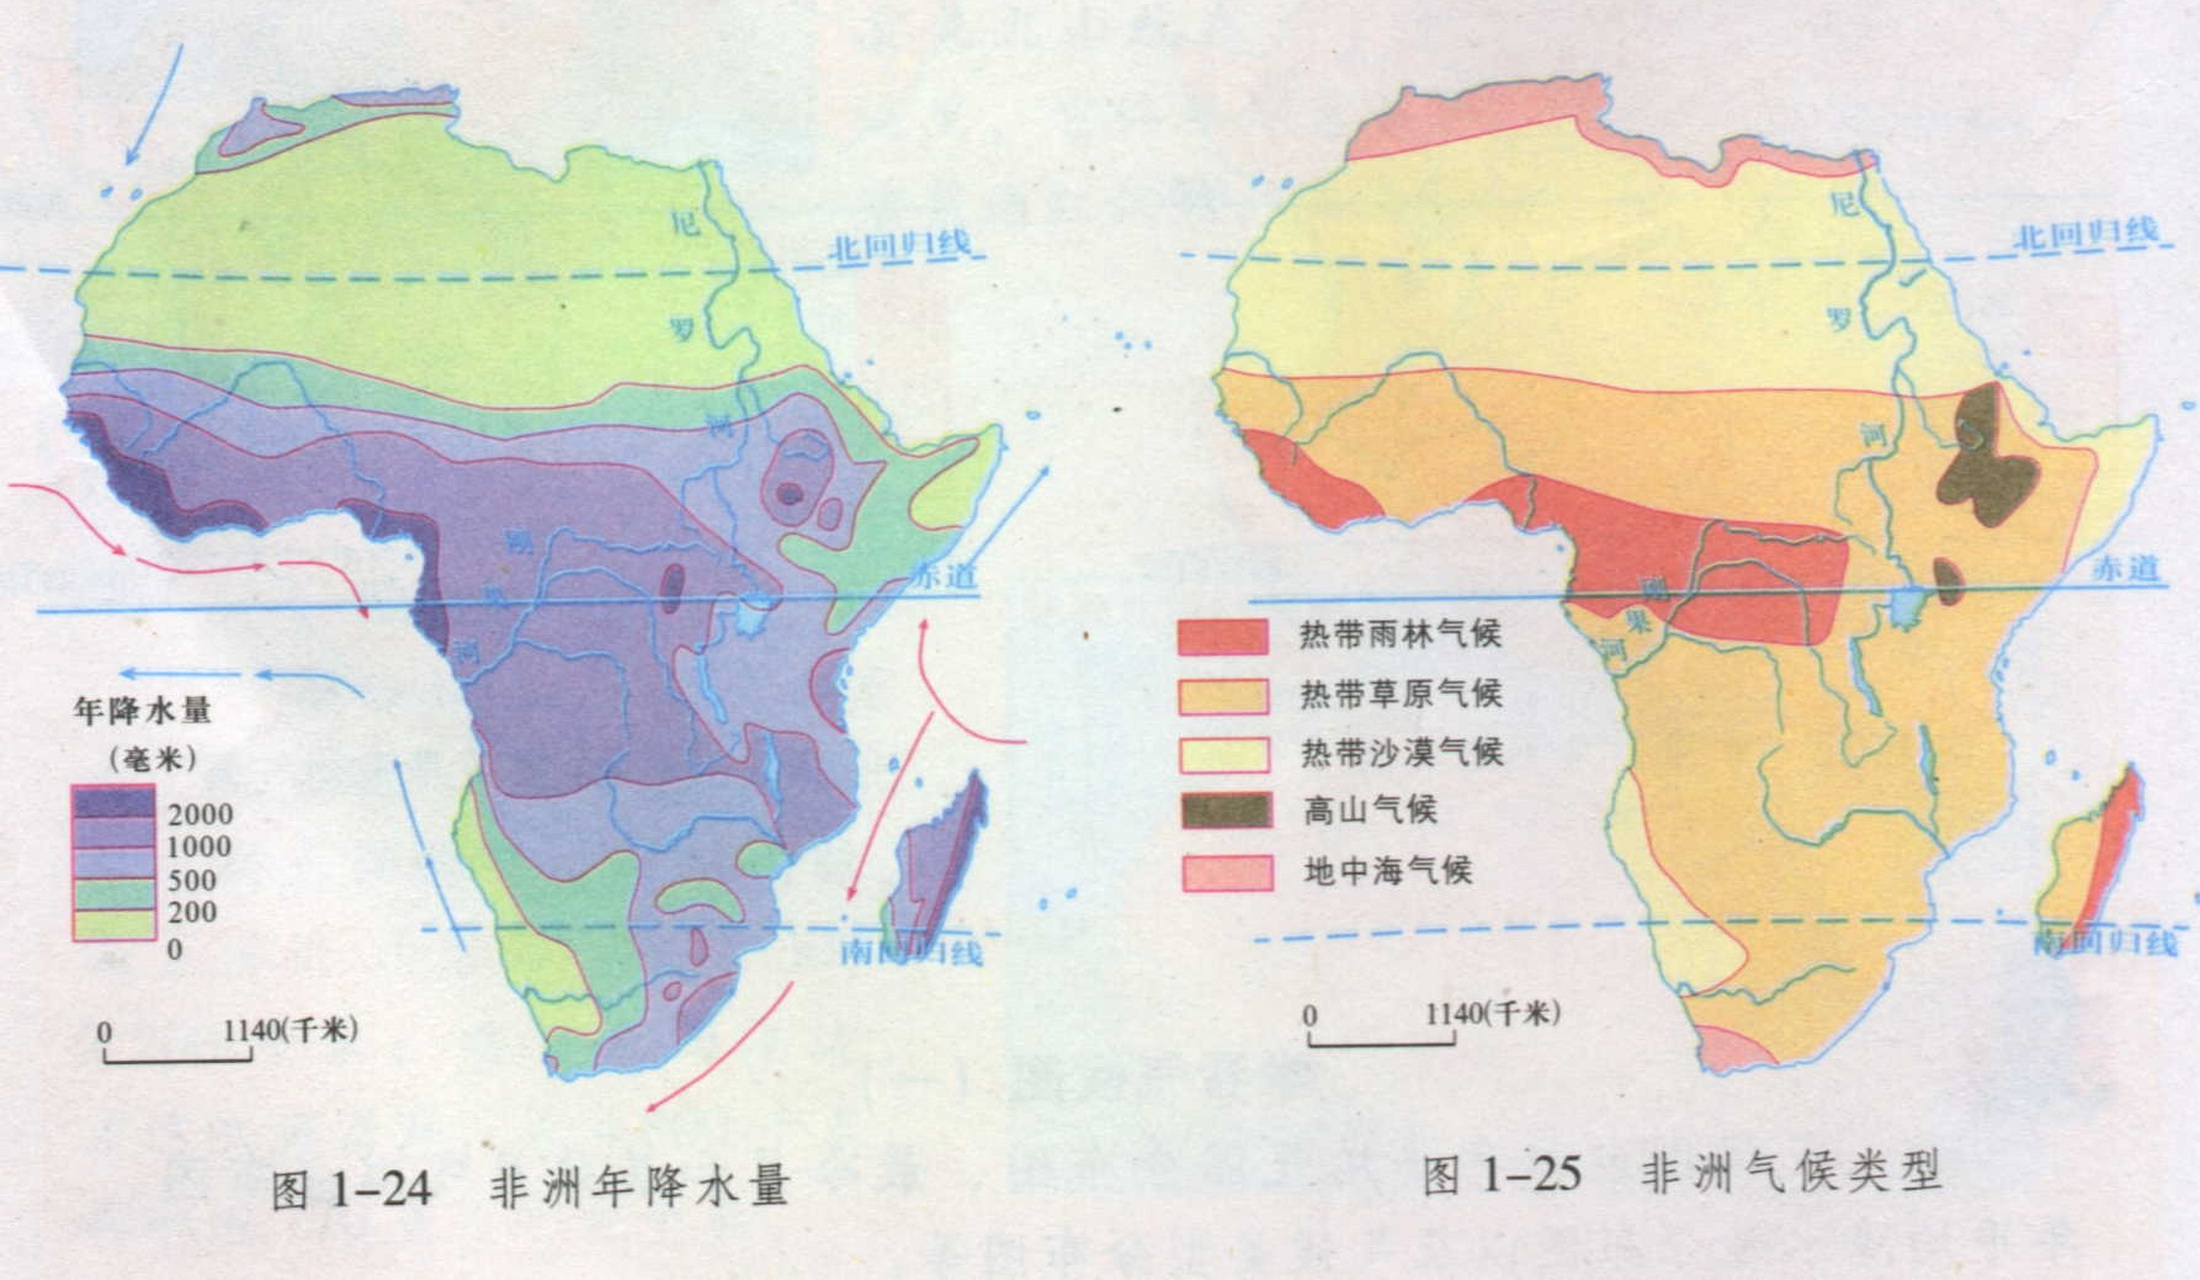 非洲气候类型分布图片图片